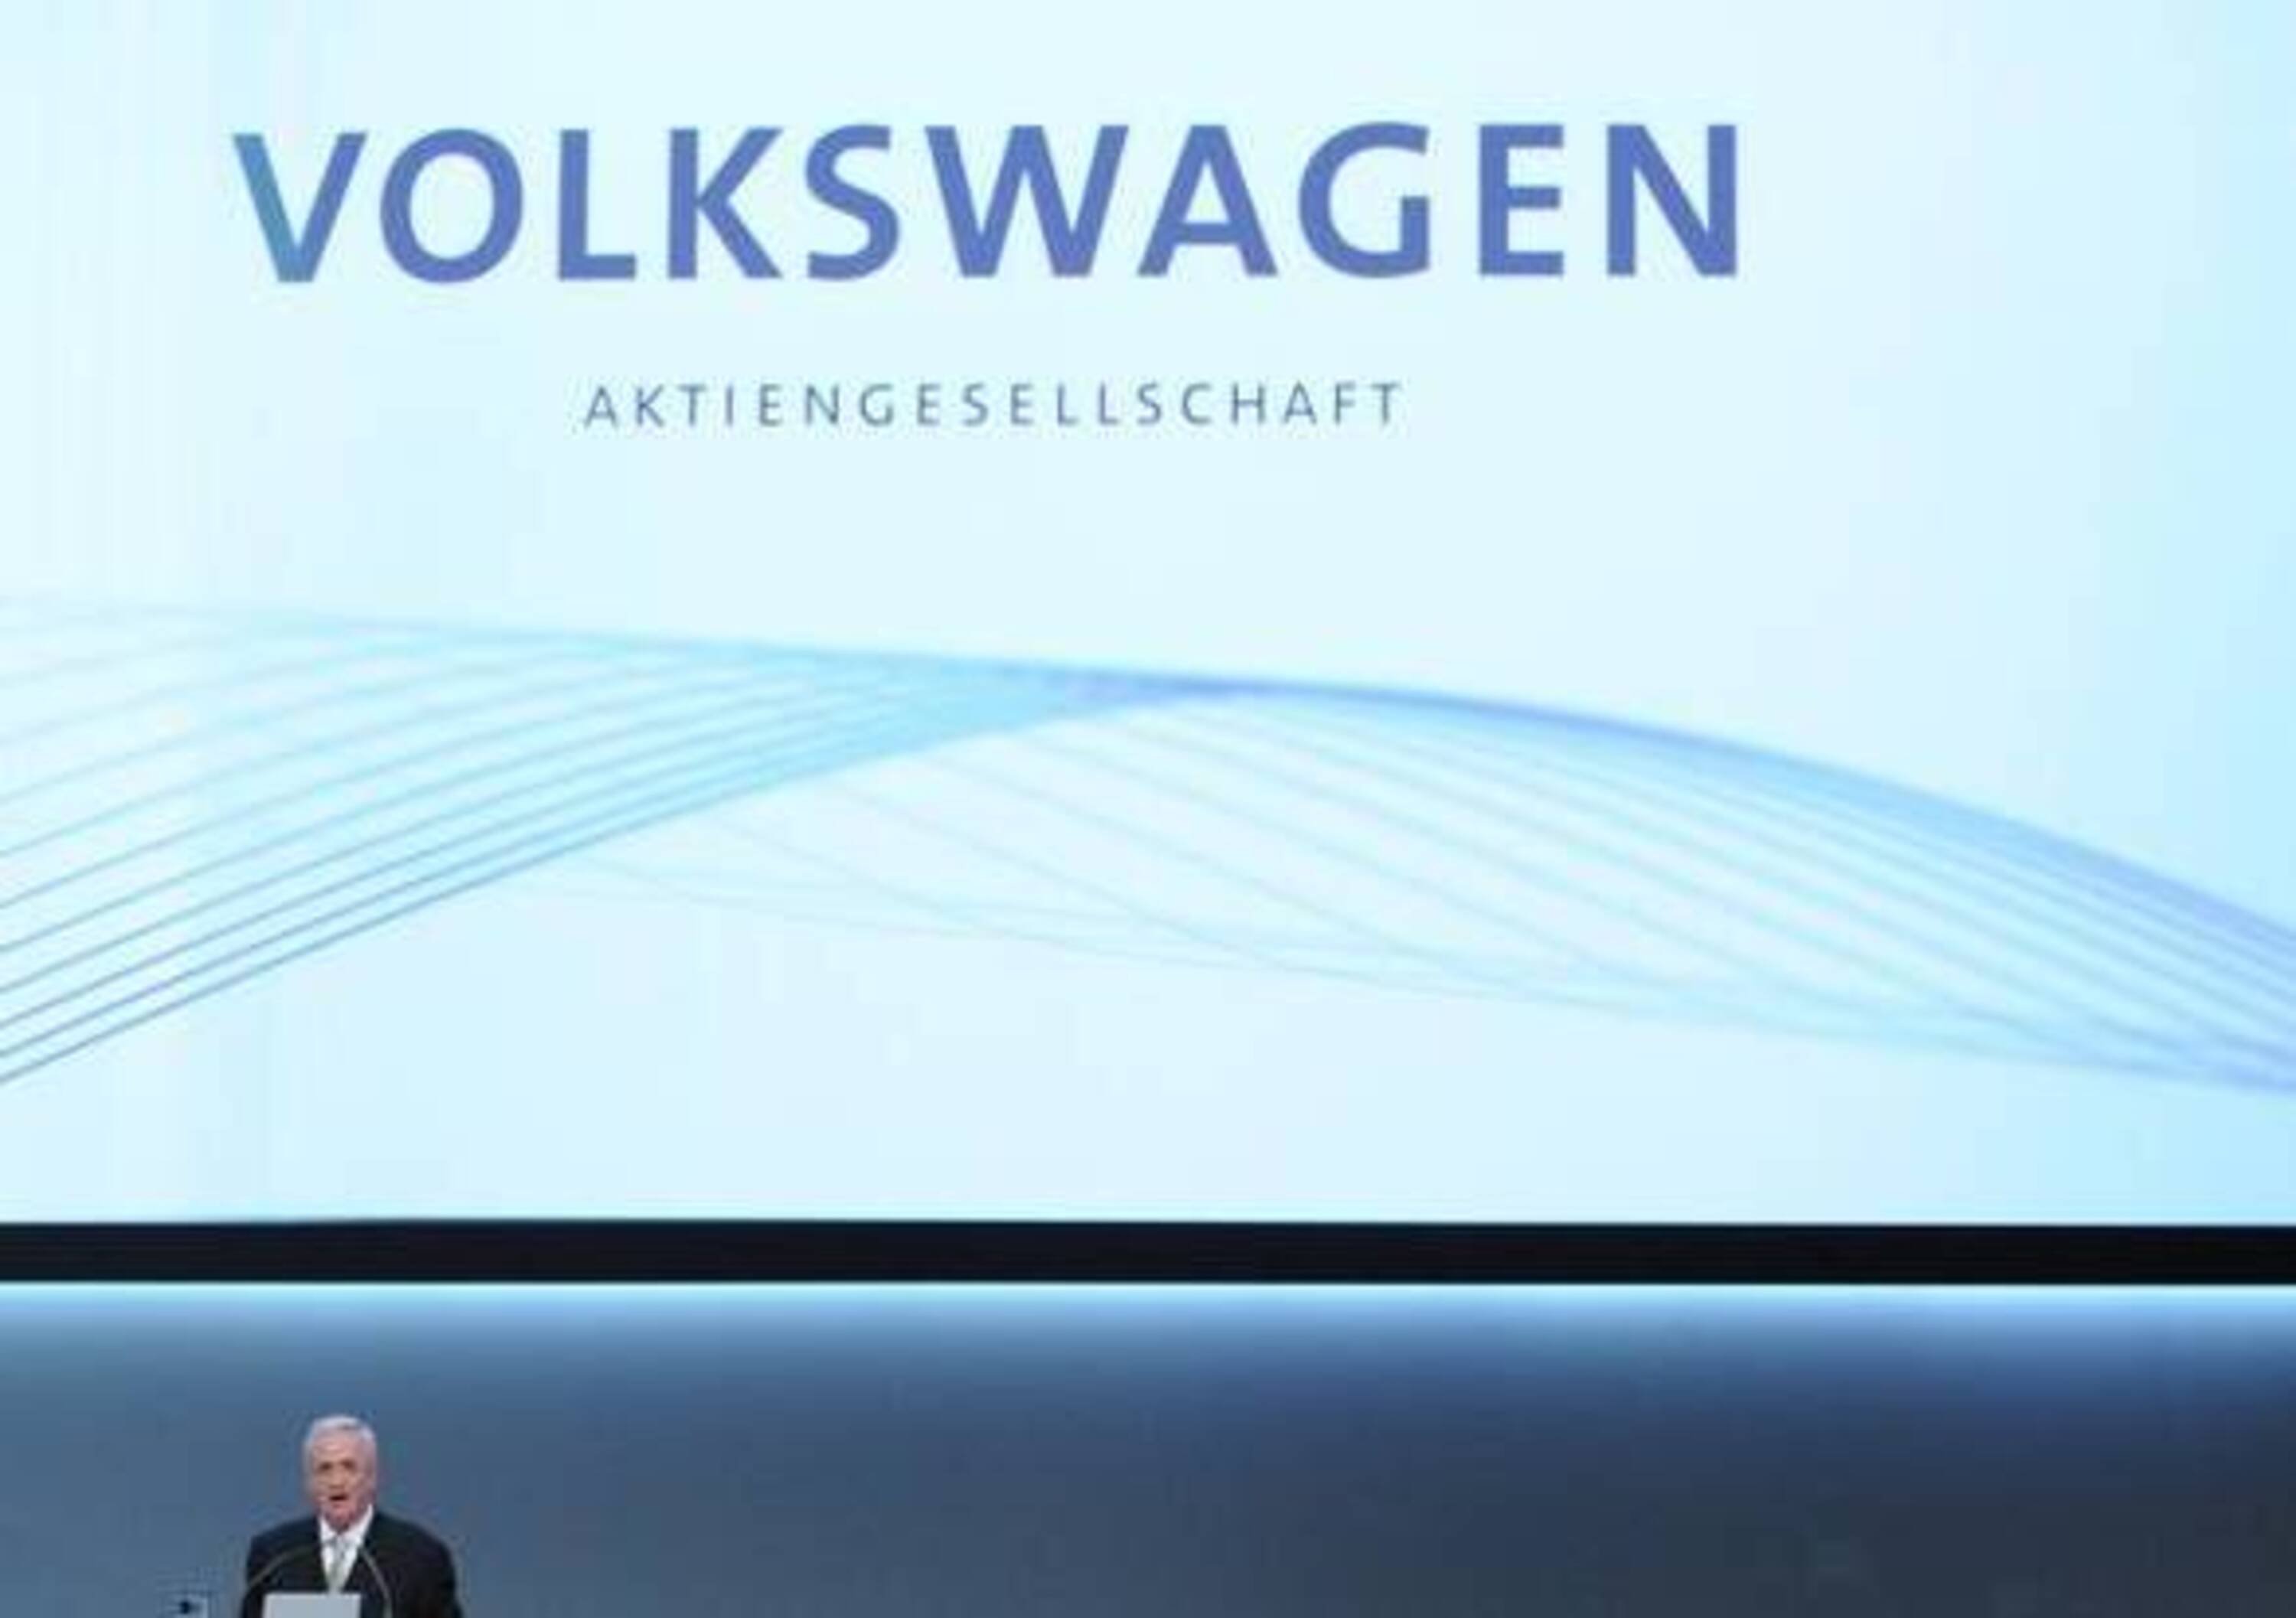 Volkswagen: due miliardi di Euro verranno investiti nelle energie rinnovabili